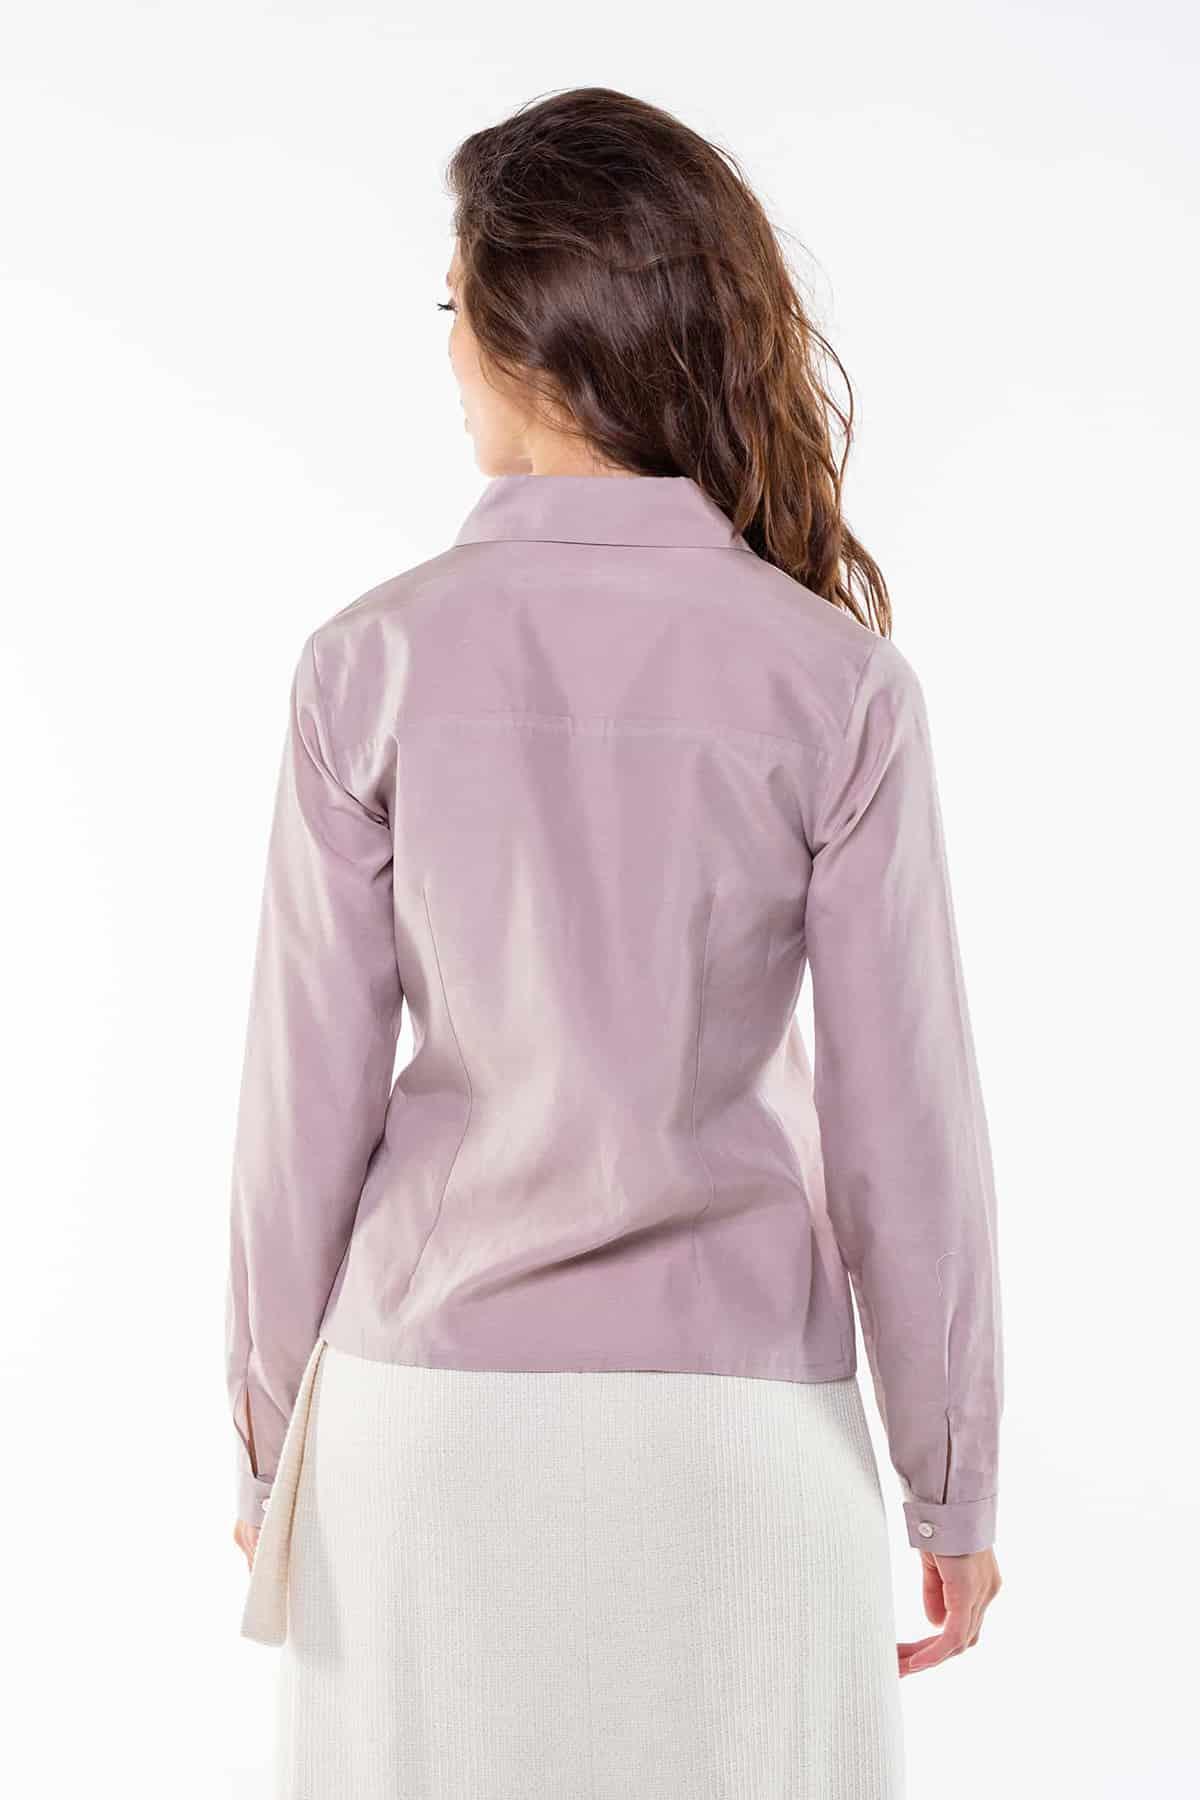 Camicia CLOE Cupro grs ecologico Cotone Biologico Moda Sostenibile Artigianale brand Malia Lab camicia sartoriale blusa su misura abbigliamento sostenibile vista posteriore